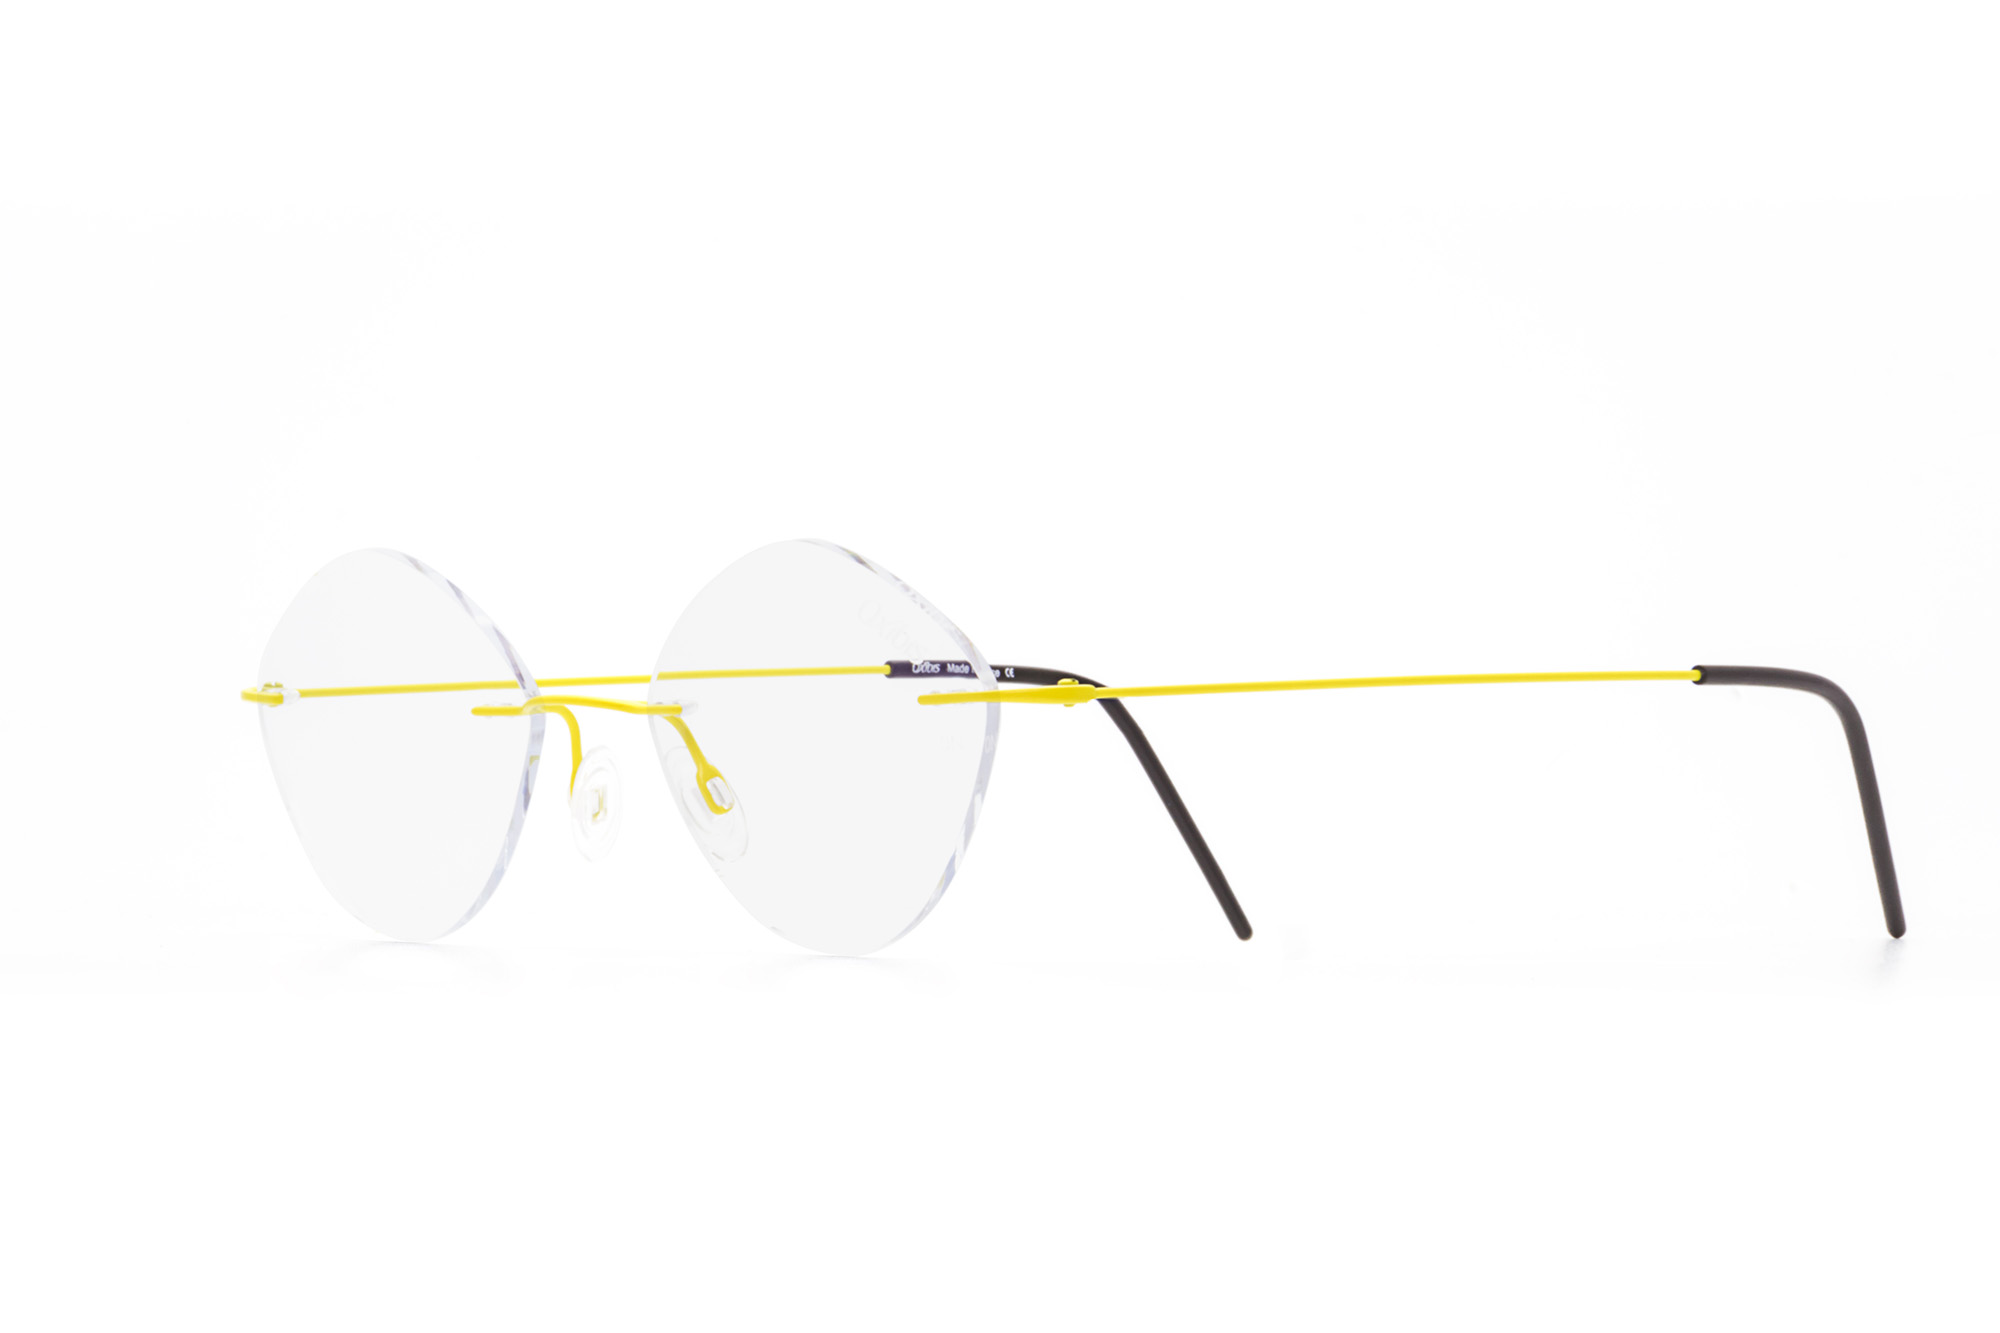 Kullanıma hazır optik tarzda işlenmiş camları ve optik uyumlu çerçevesiyle Oxibis Zef ZP7C11 47 küçük ekartman neon sarı renkli üçgen model çerçevesiz unisex gözlüğü optisyen veya gözlükçülerin sunacağı numarasız veya numaralı cam özelleştirmeleriyle size en yakın gözlükçüden satın alabilirsiniz.